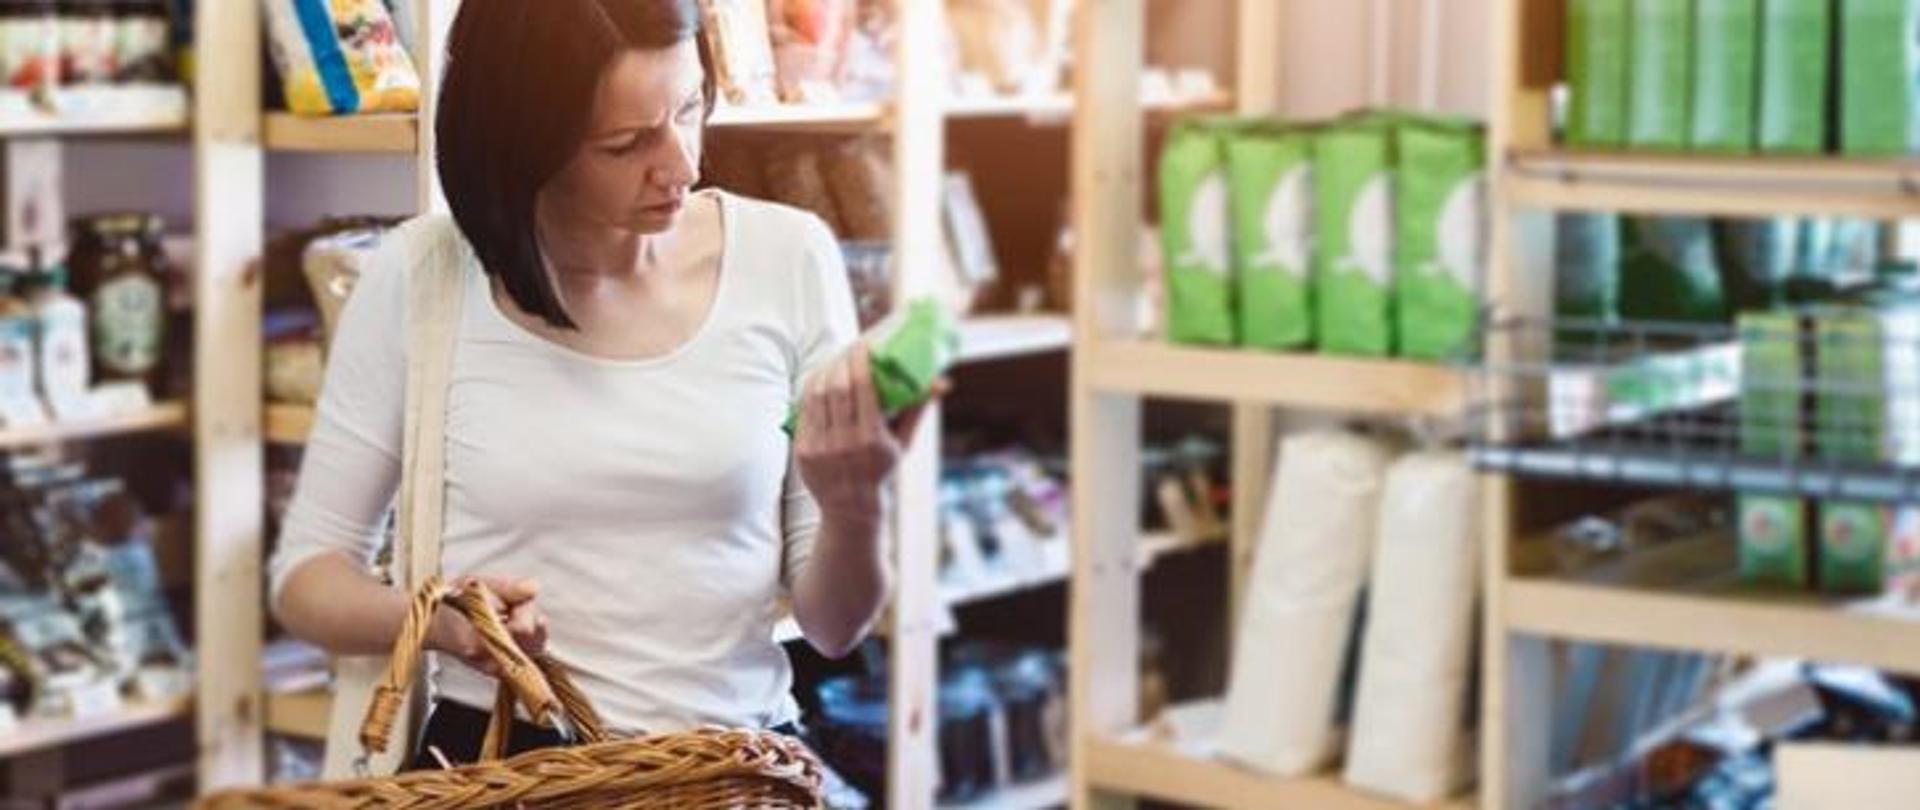 Kobieta w sklepie spożywczym, trzyma w prawej ręce koszyk na zakupy a w lewej dłoni produkt spożywczy i czyta etykietę